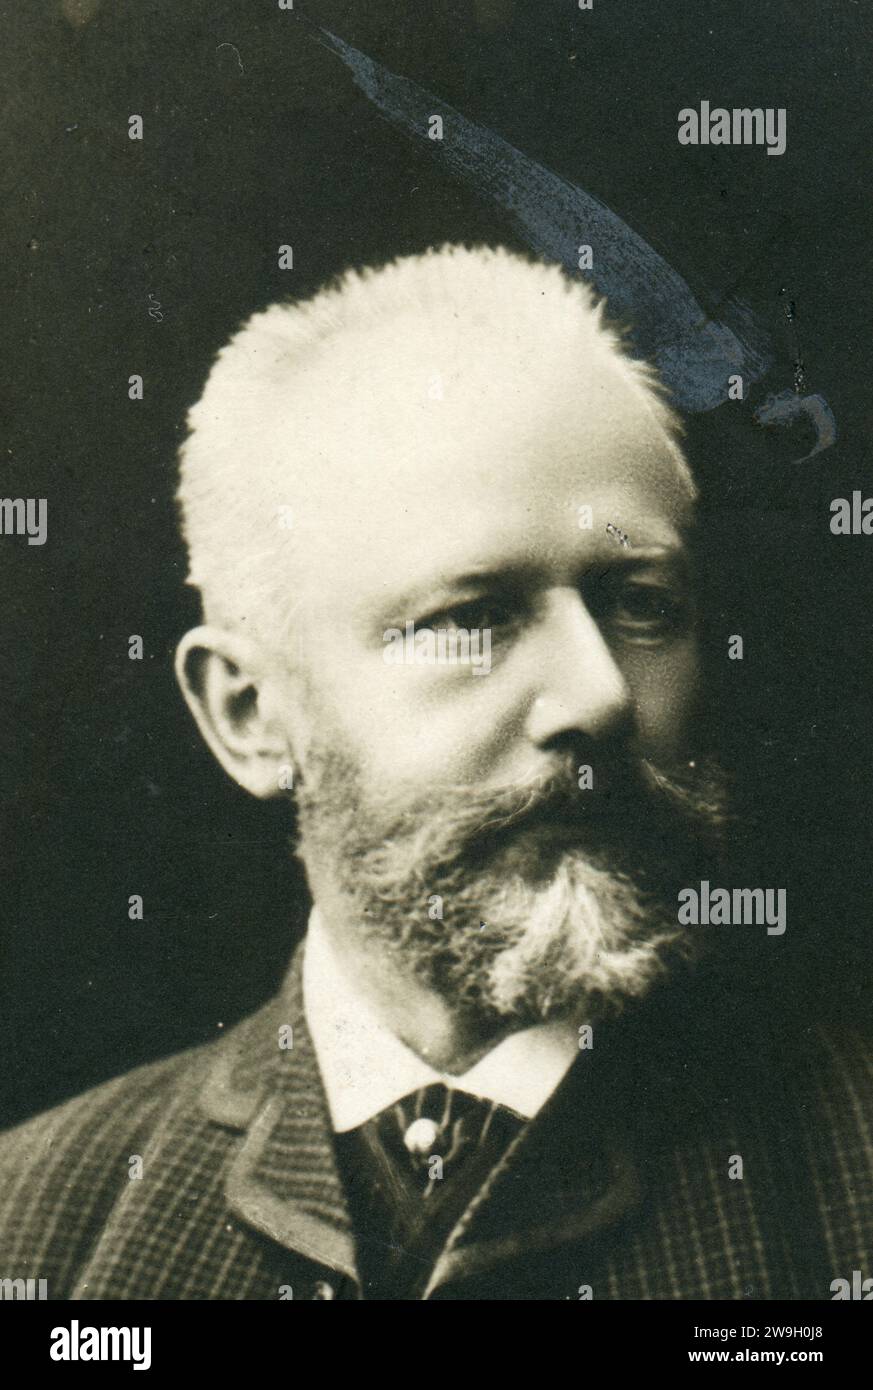 Pyotr Ilyich Tchaikovsky (7 de mayo de 1840 - 6 de noviembre de 1893) fue un compositor ruso del período romántico. Antigua postal vintage del Imperio ruso. 1880s.. Detalle. Foto de stock